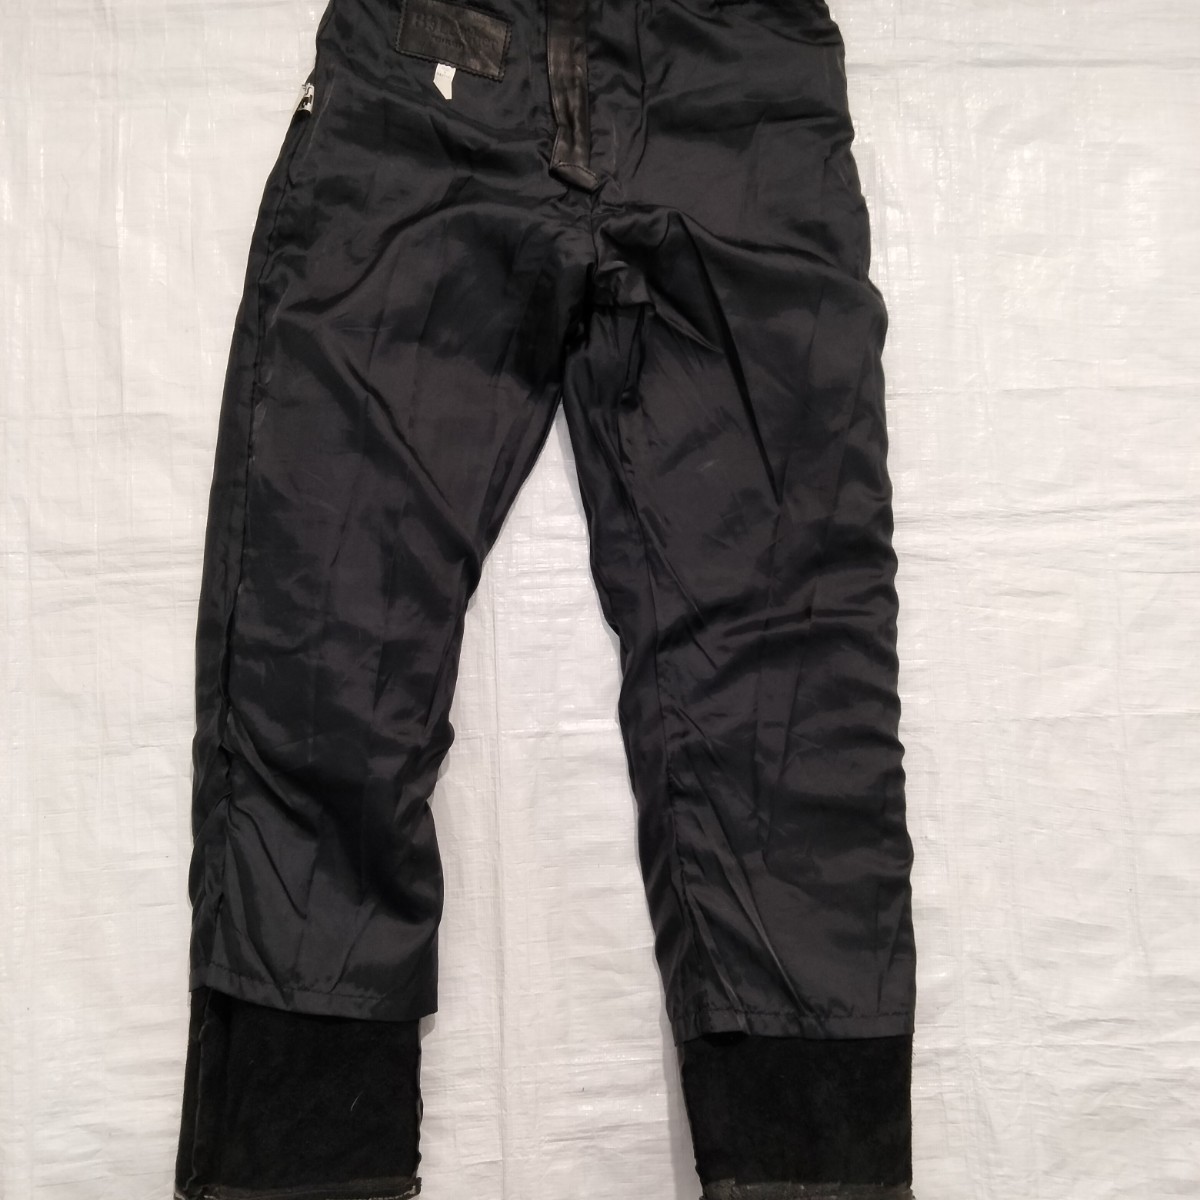 B‘s Leather bikers　レザーパンツ　leather pant　ブラック　革　牛革　バイク用　コーリン　corin 革パン　5ポケット　jeans型　BLACK　_画像7